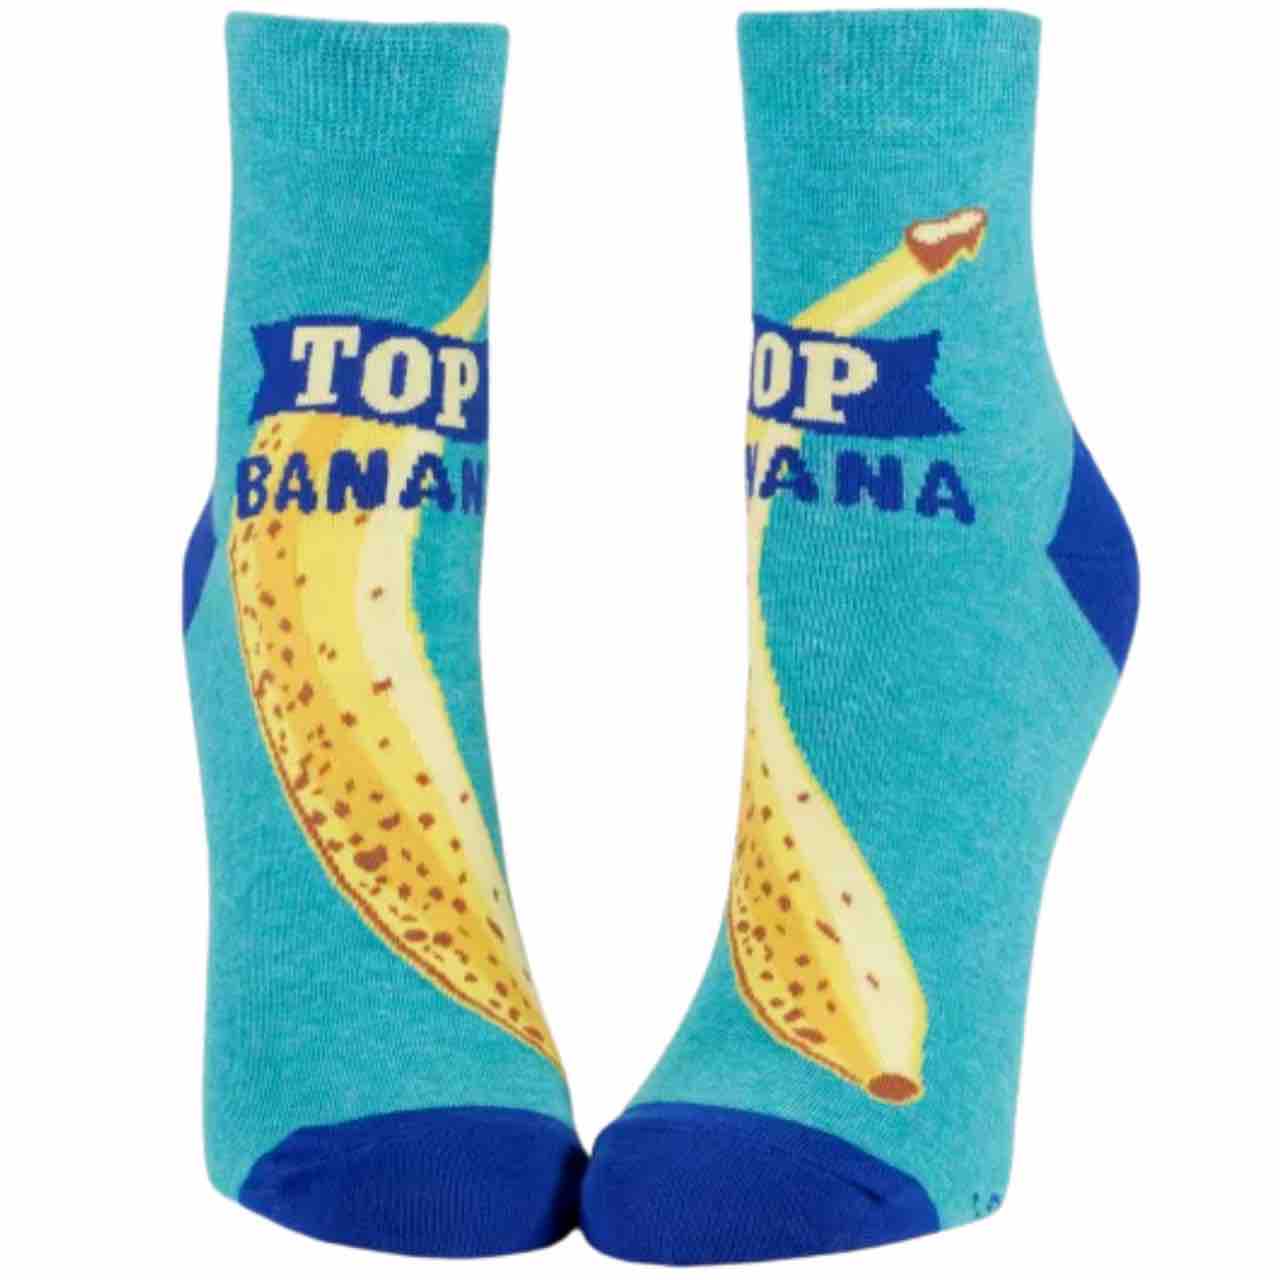 Blue Q Women's Ankle Socks | Top Banana